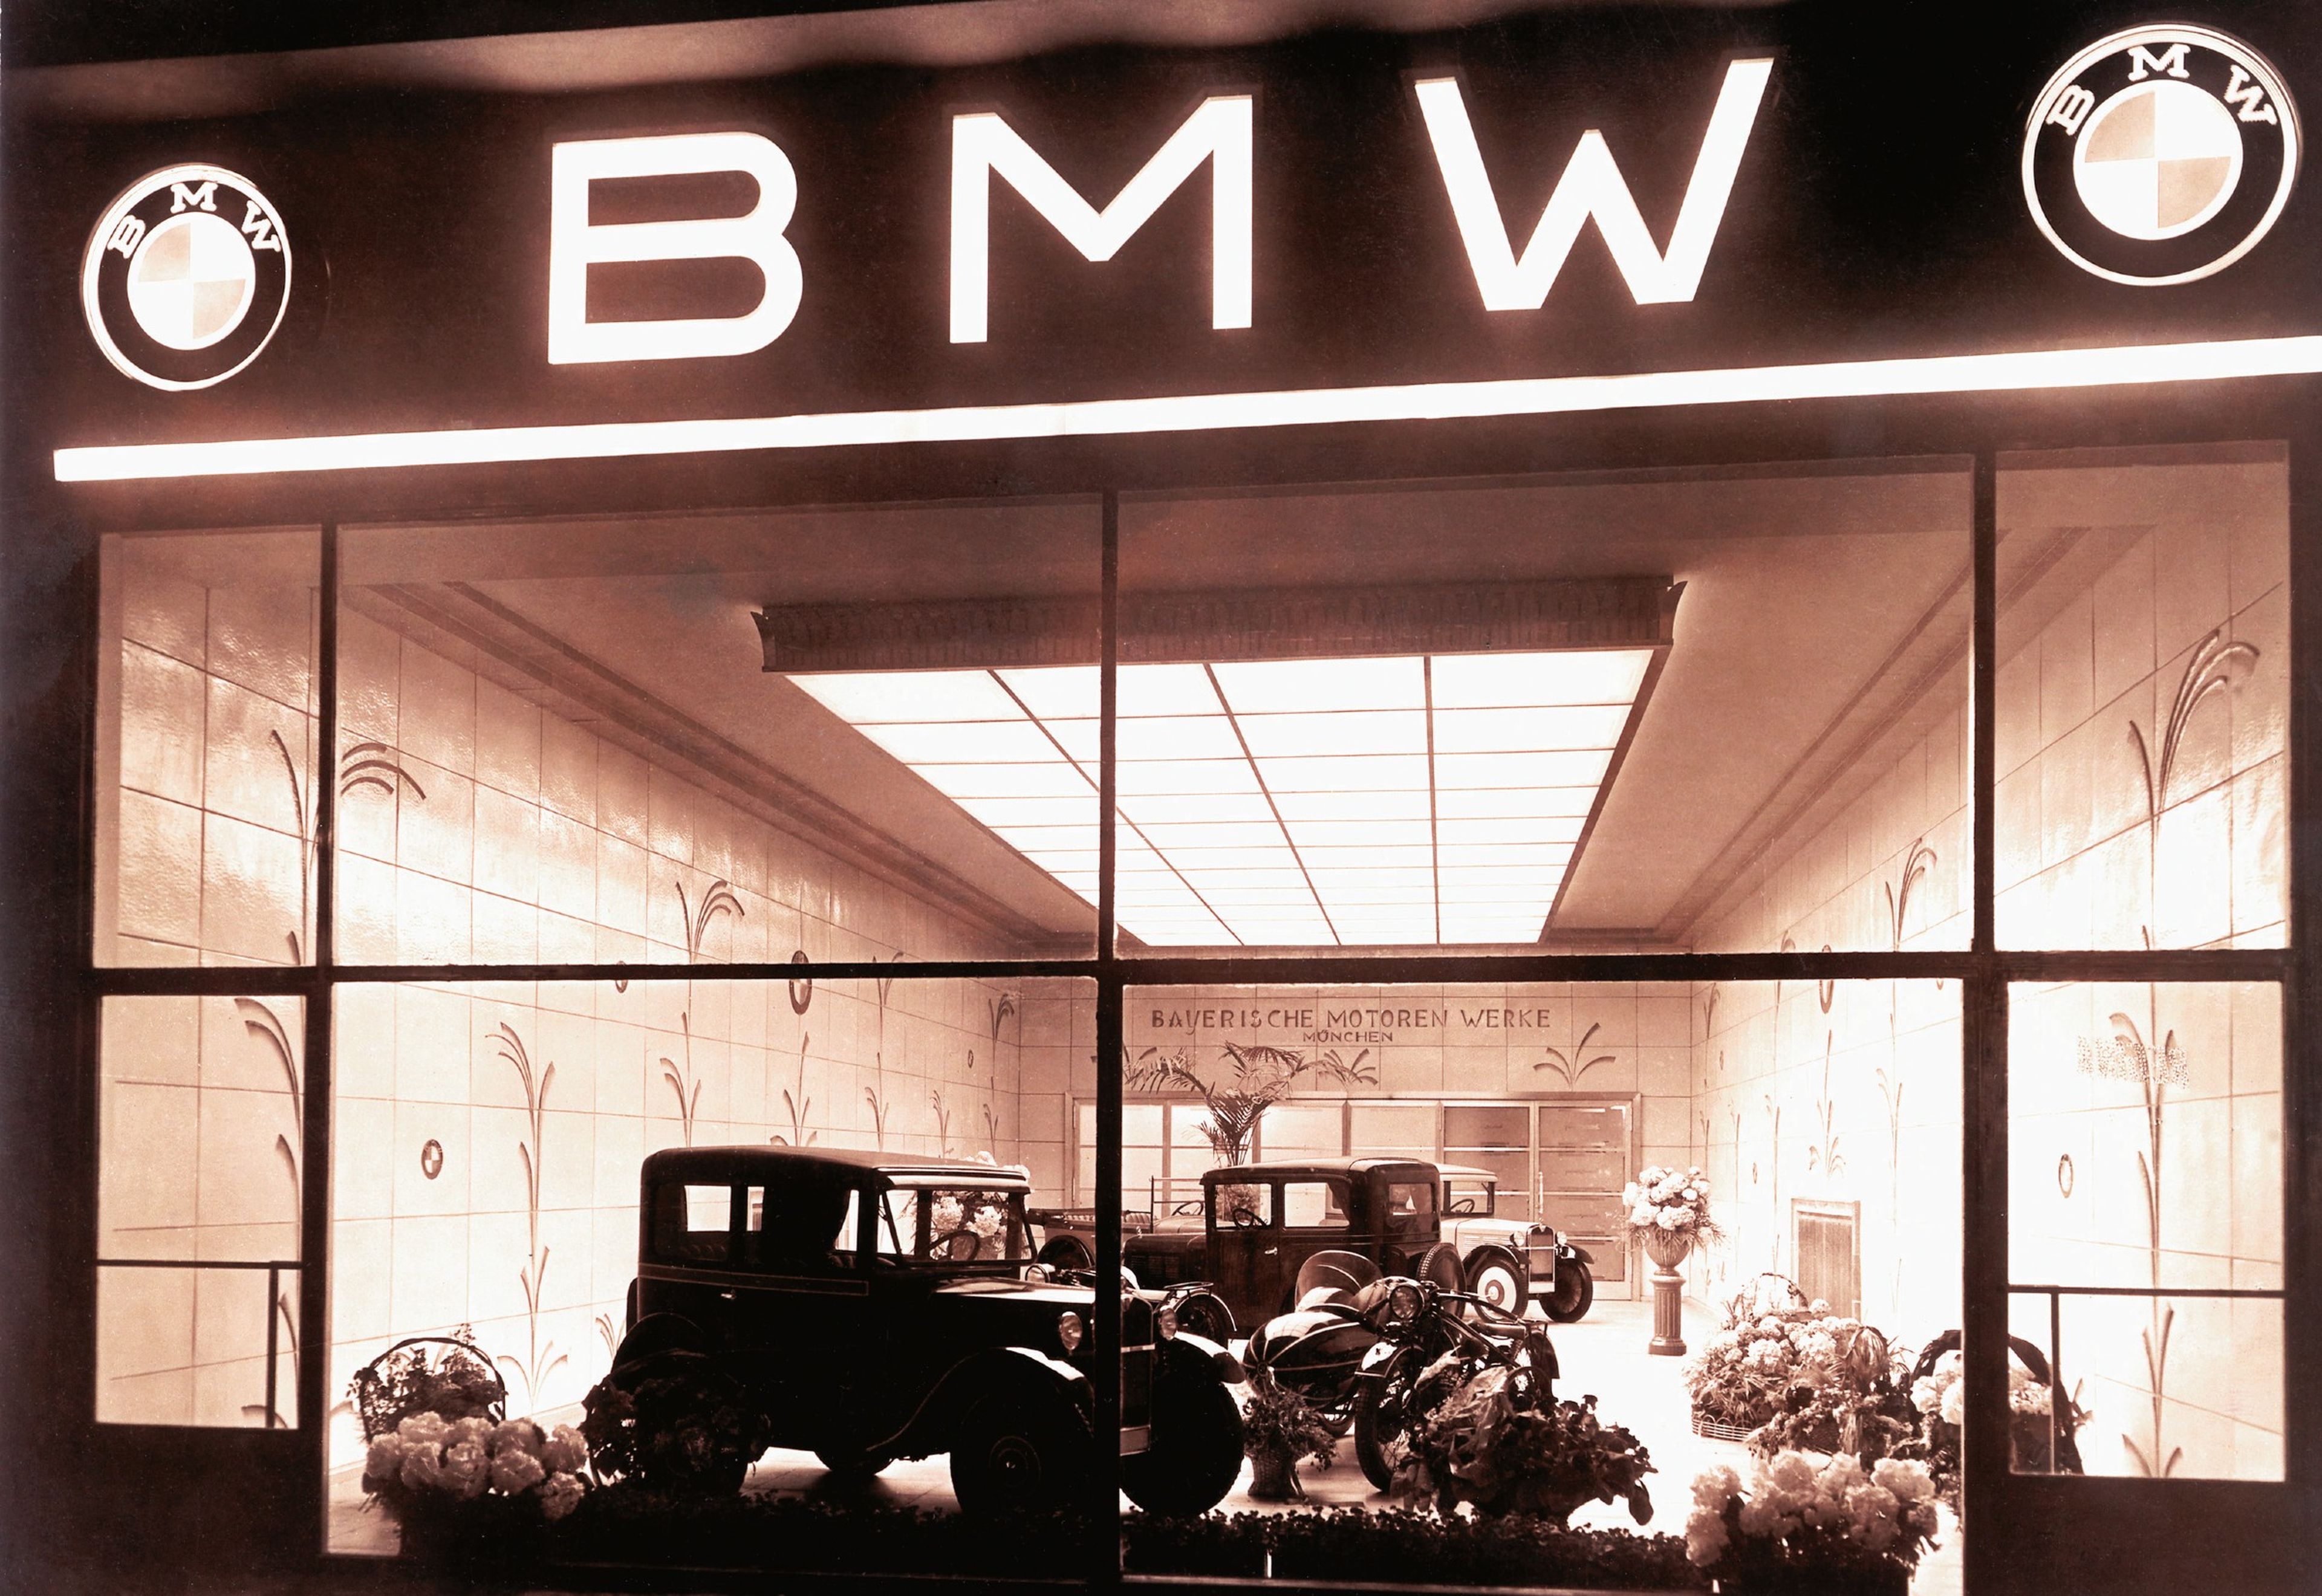 La historia de la marca BMW